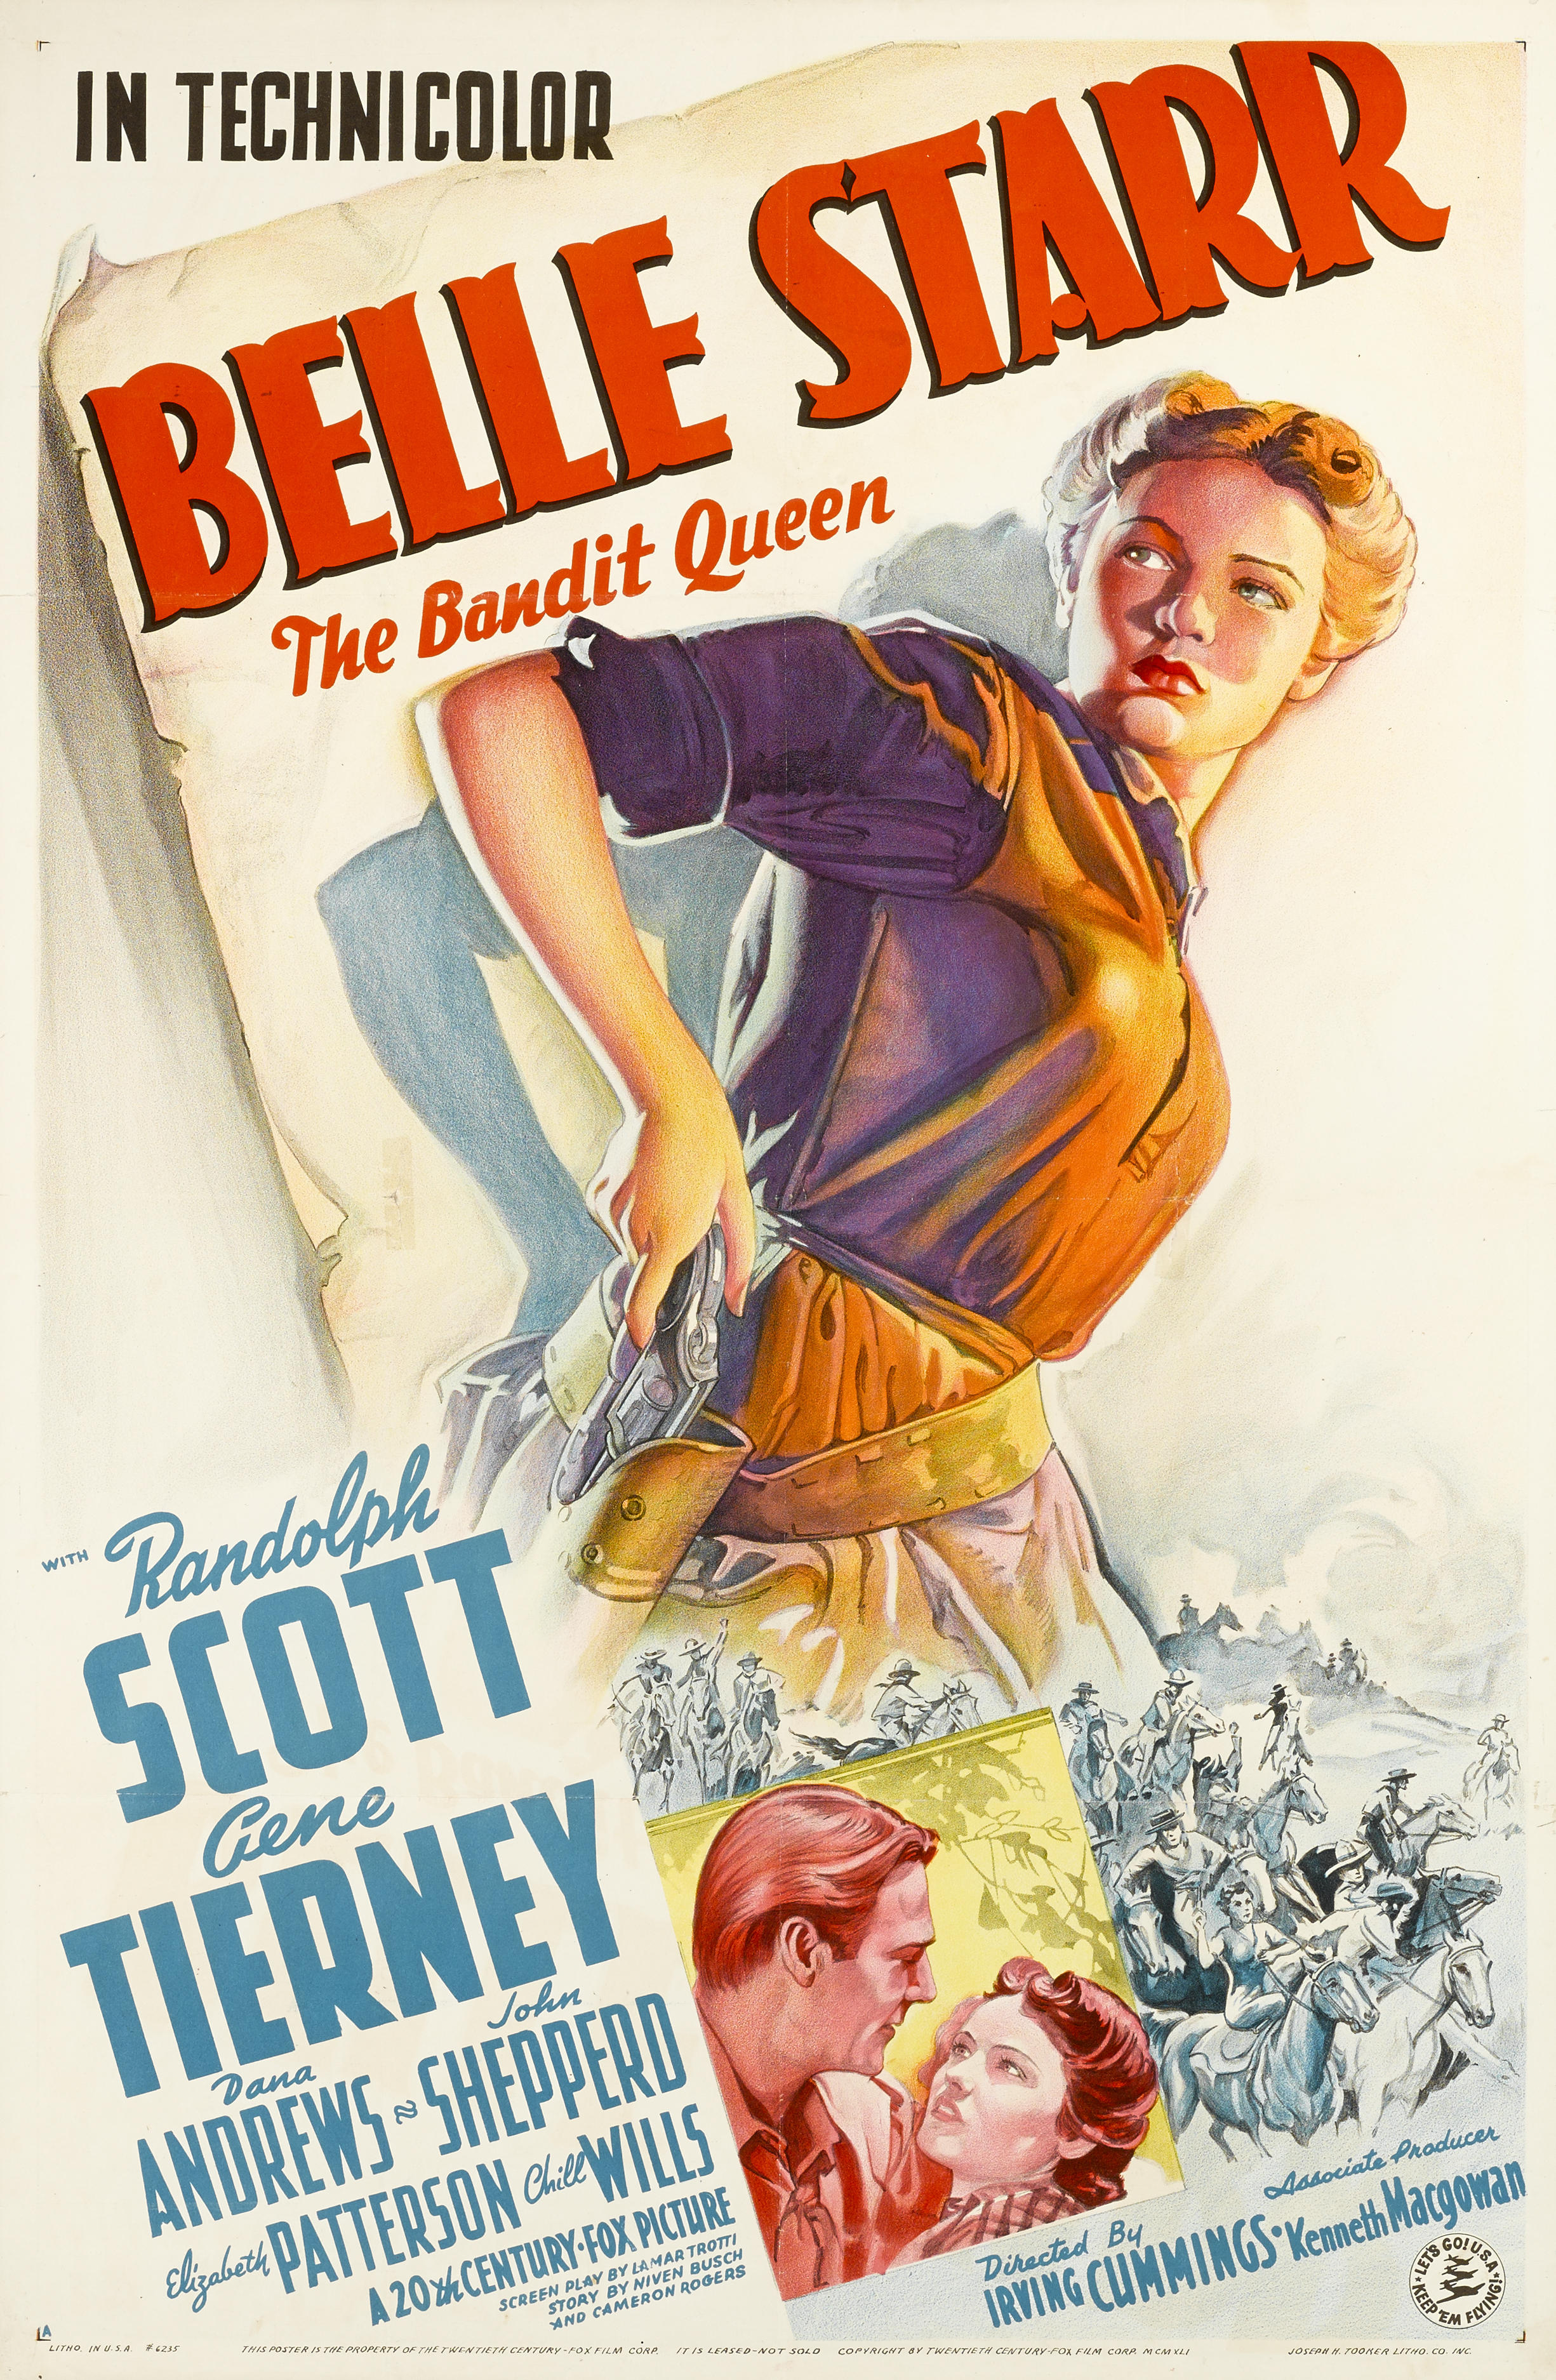 Sinema Sanattır: Muhteşem Afişlere Sahip 20 Film 8 – 1941 Belle Starr